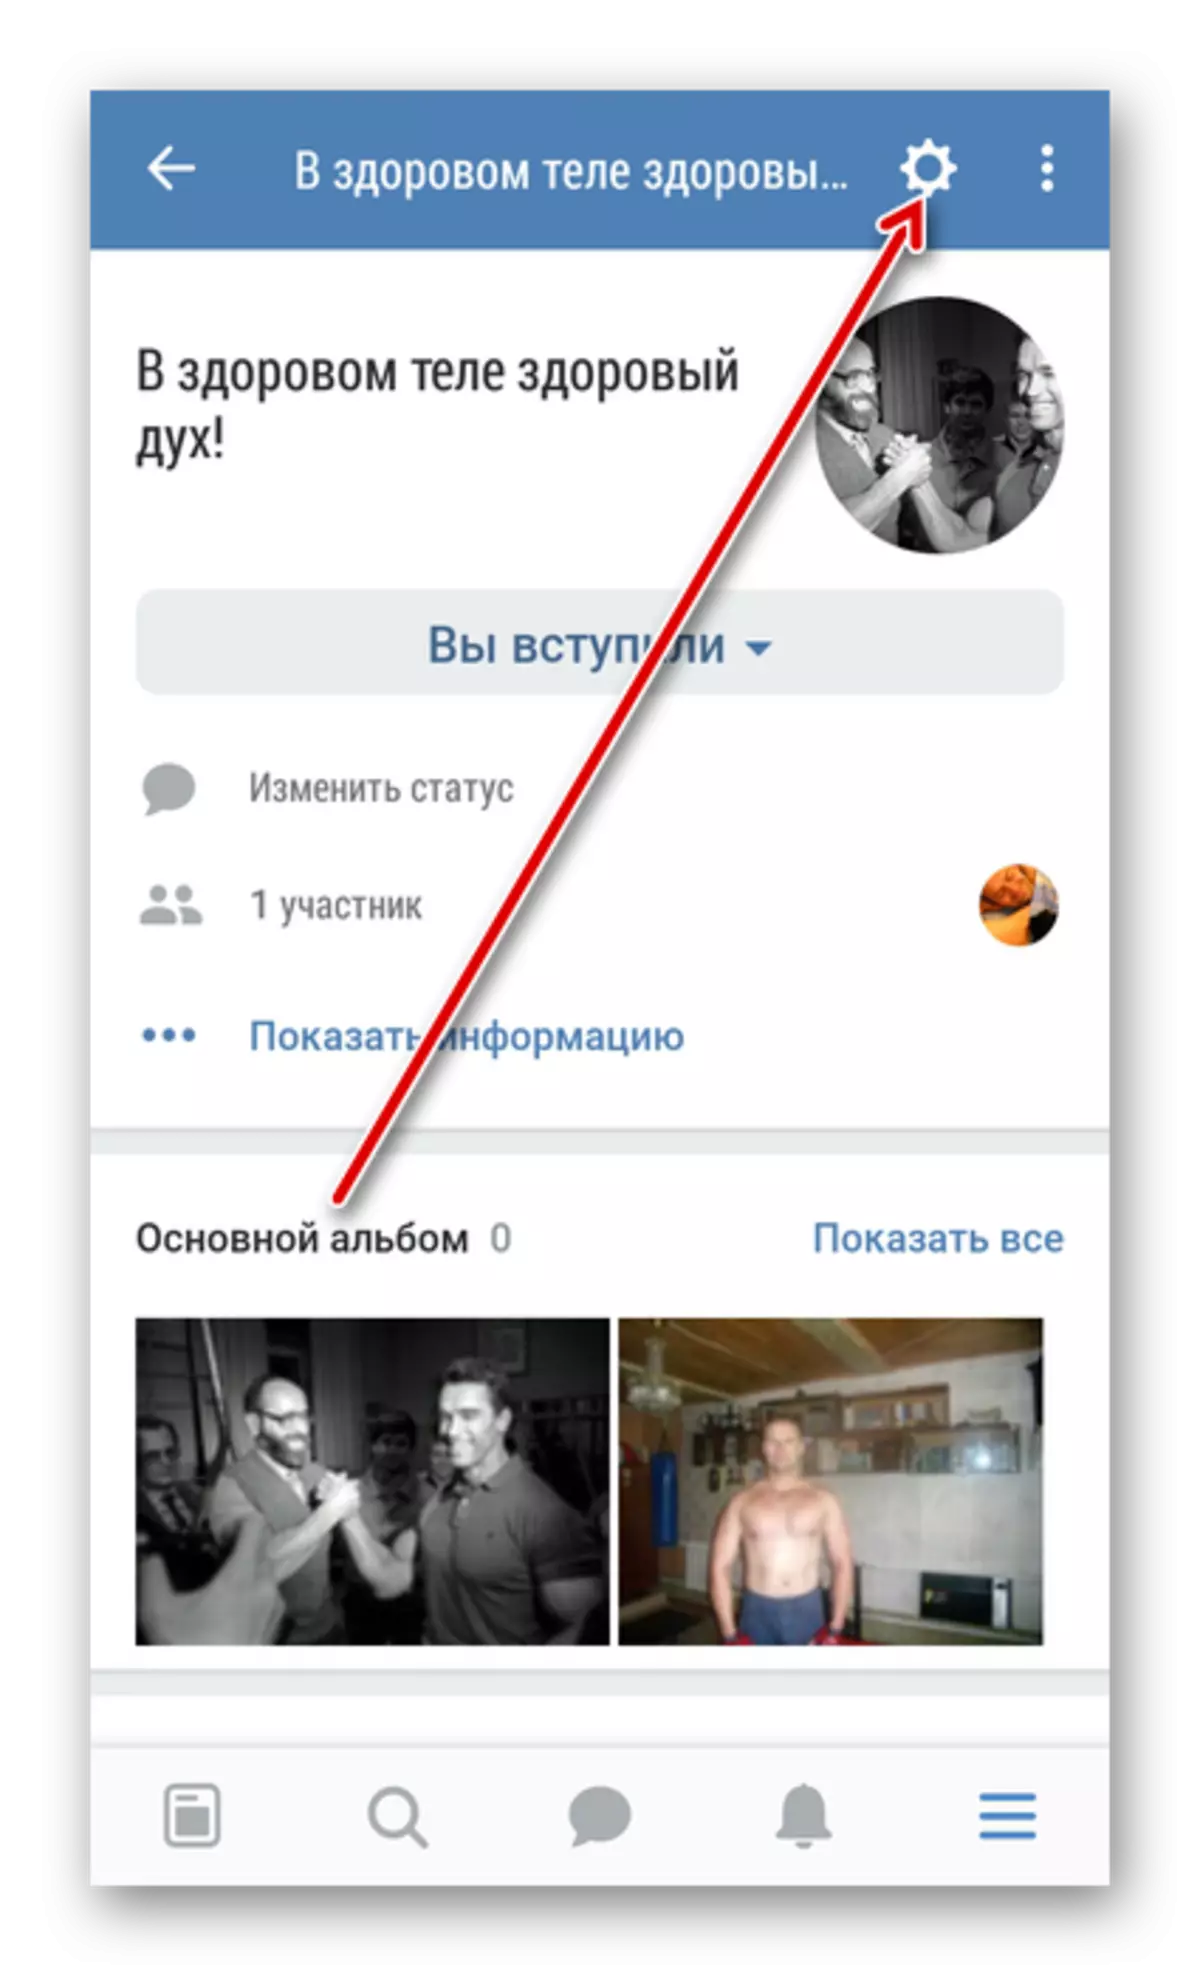 ВКонтактедеги топтун жөндөөлөрүнө кириңиз